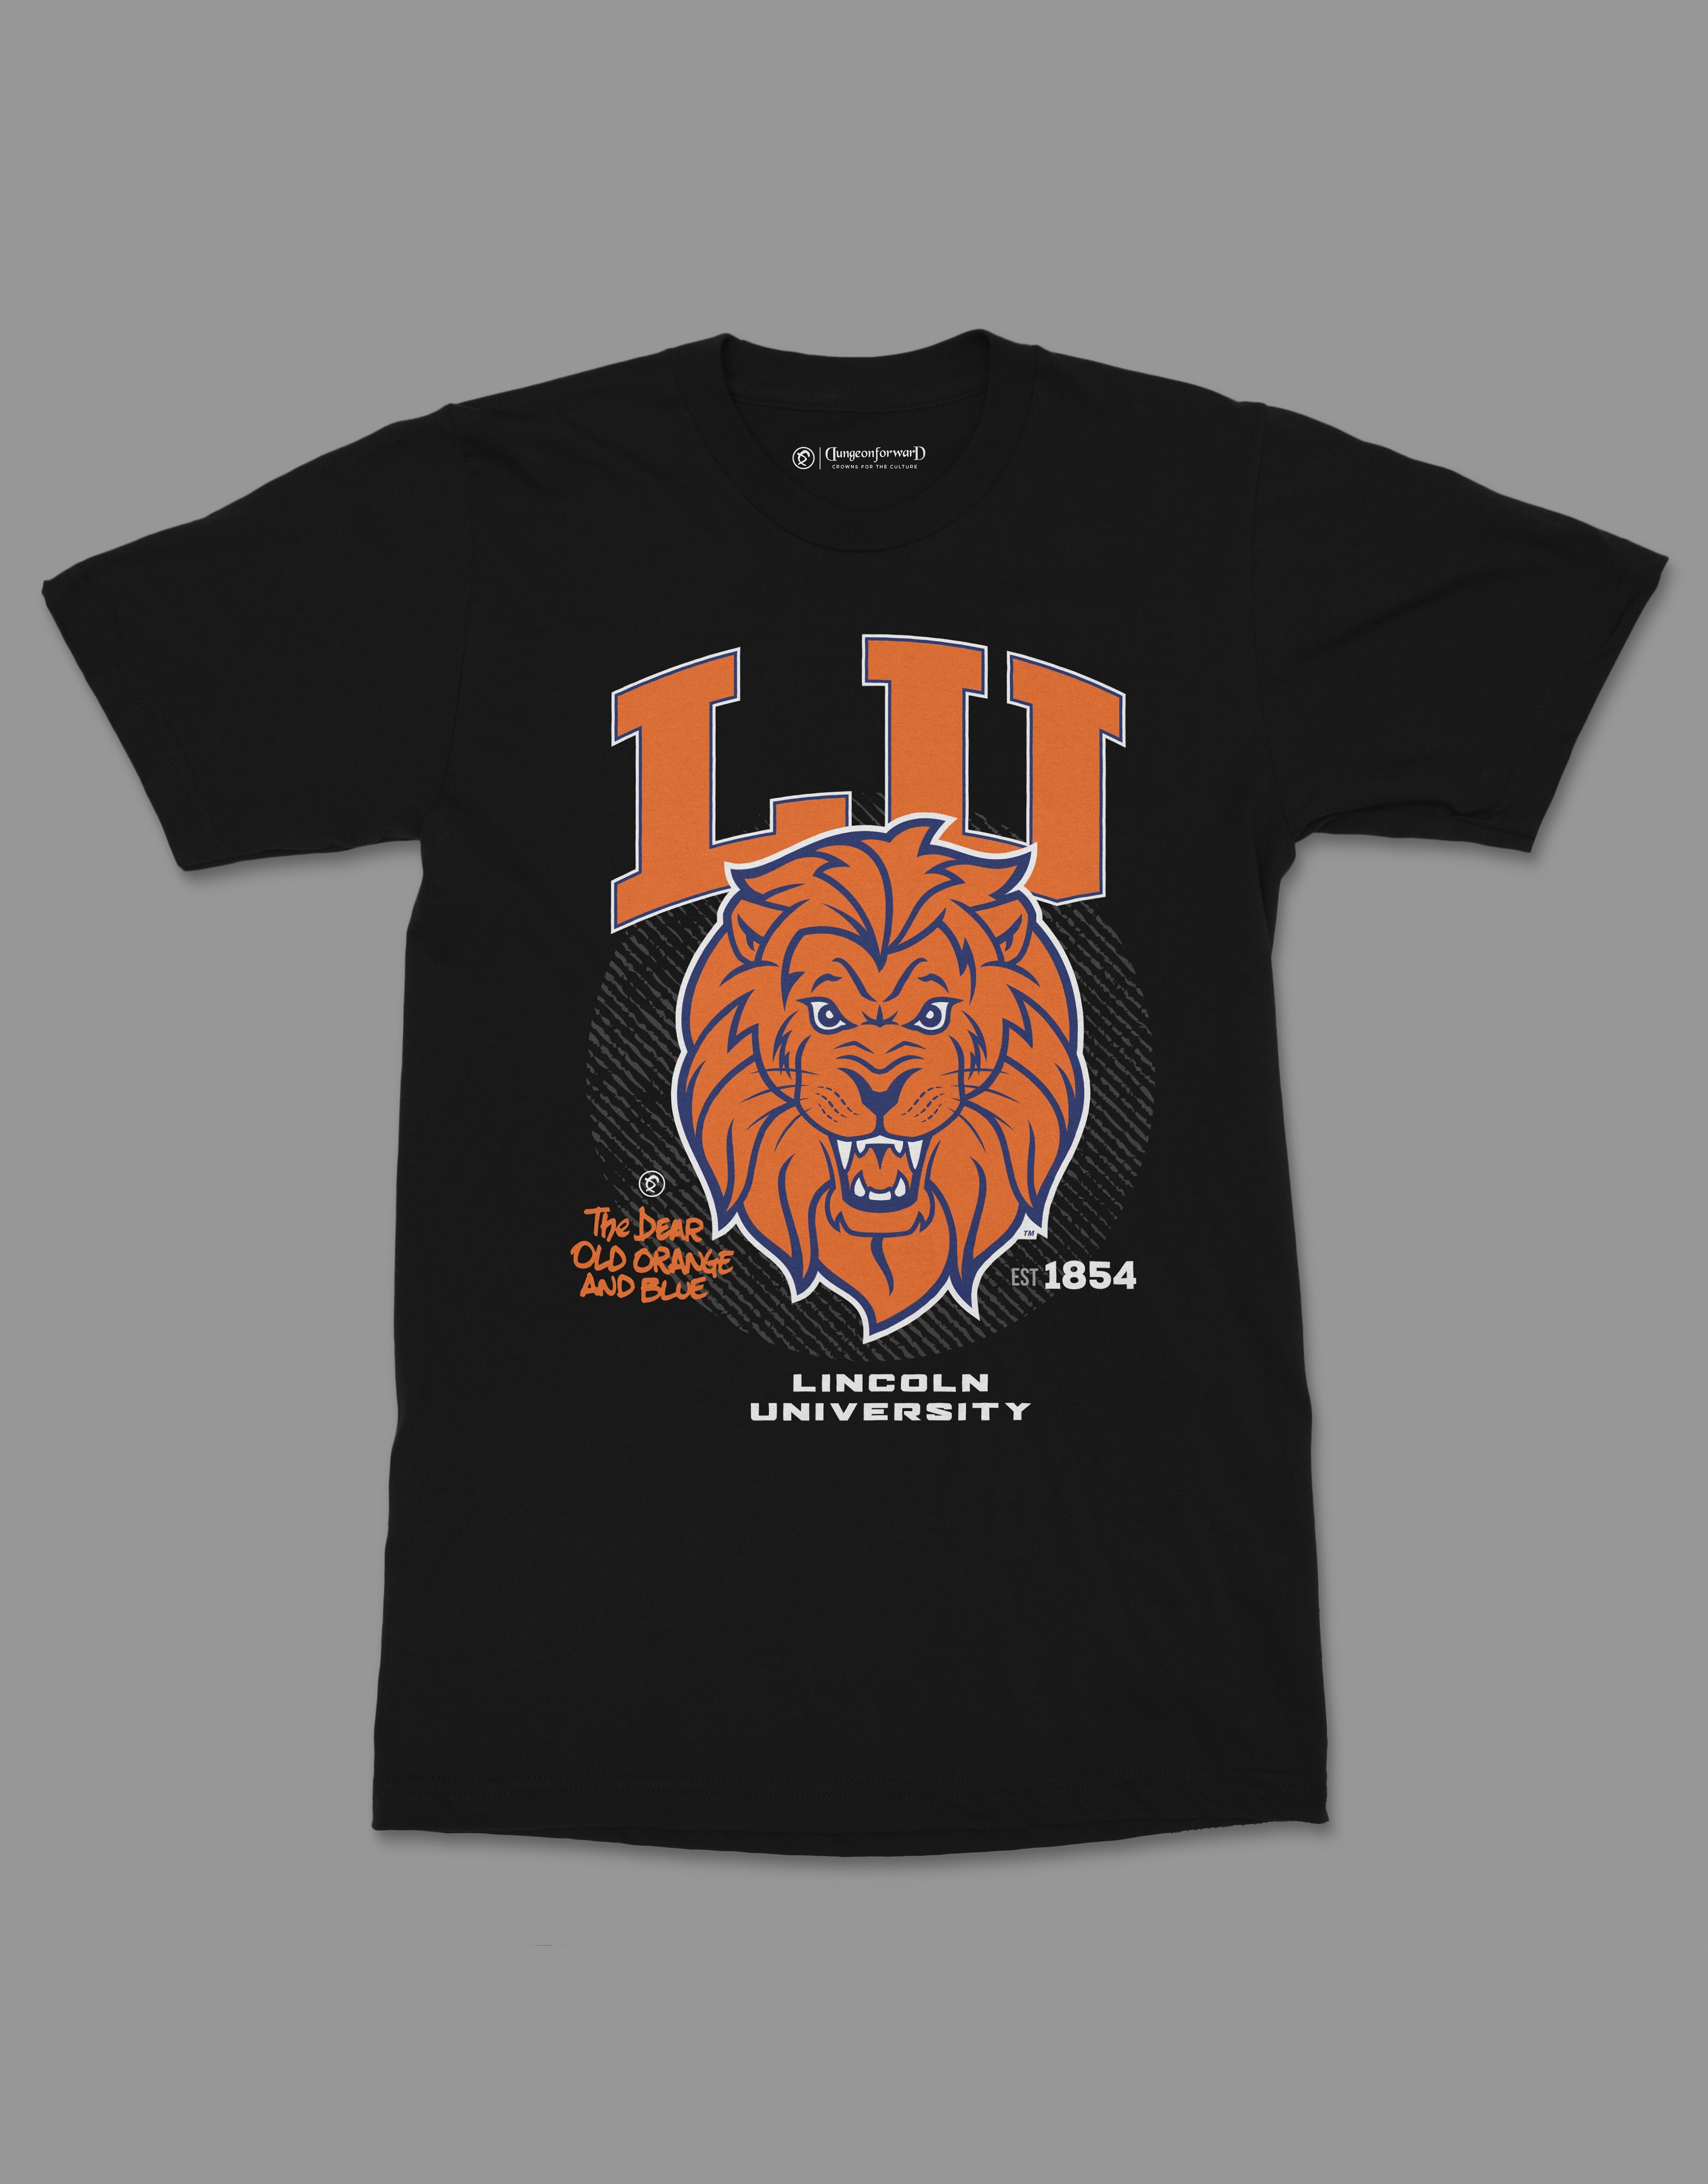 The Yard Essentials - Lincoln University (PA) -  LU Tshirt